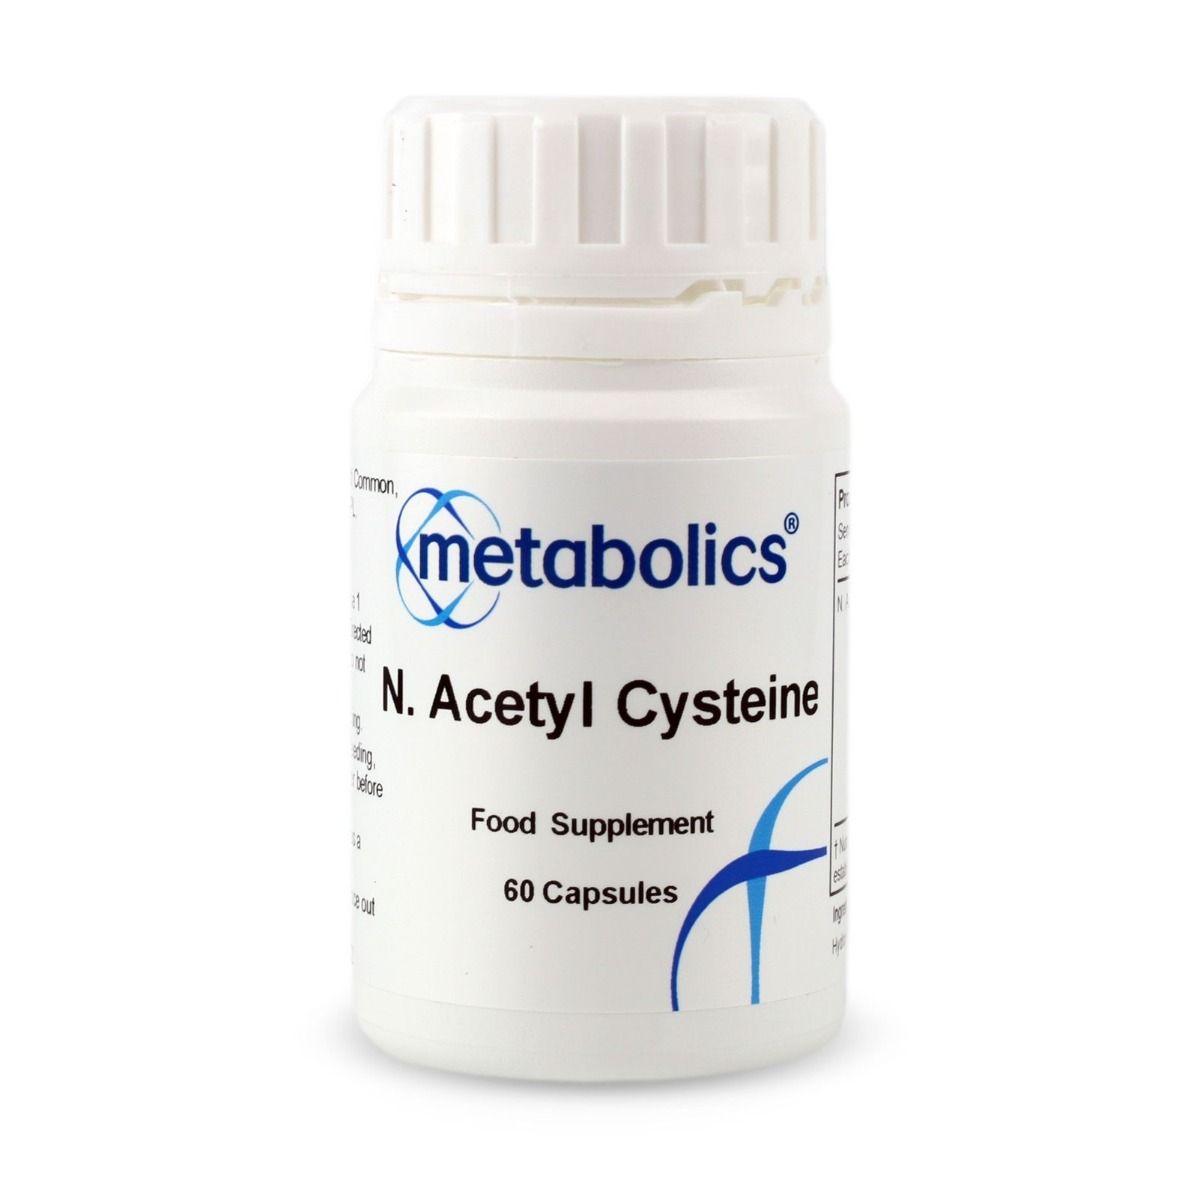 N. Acetyl Cysteine Capsules